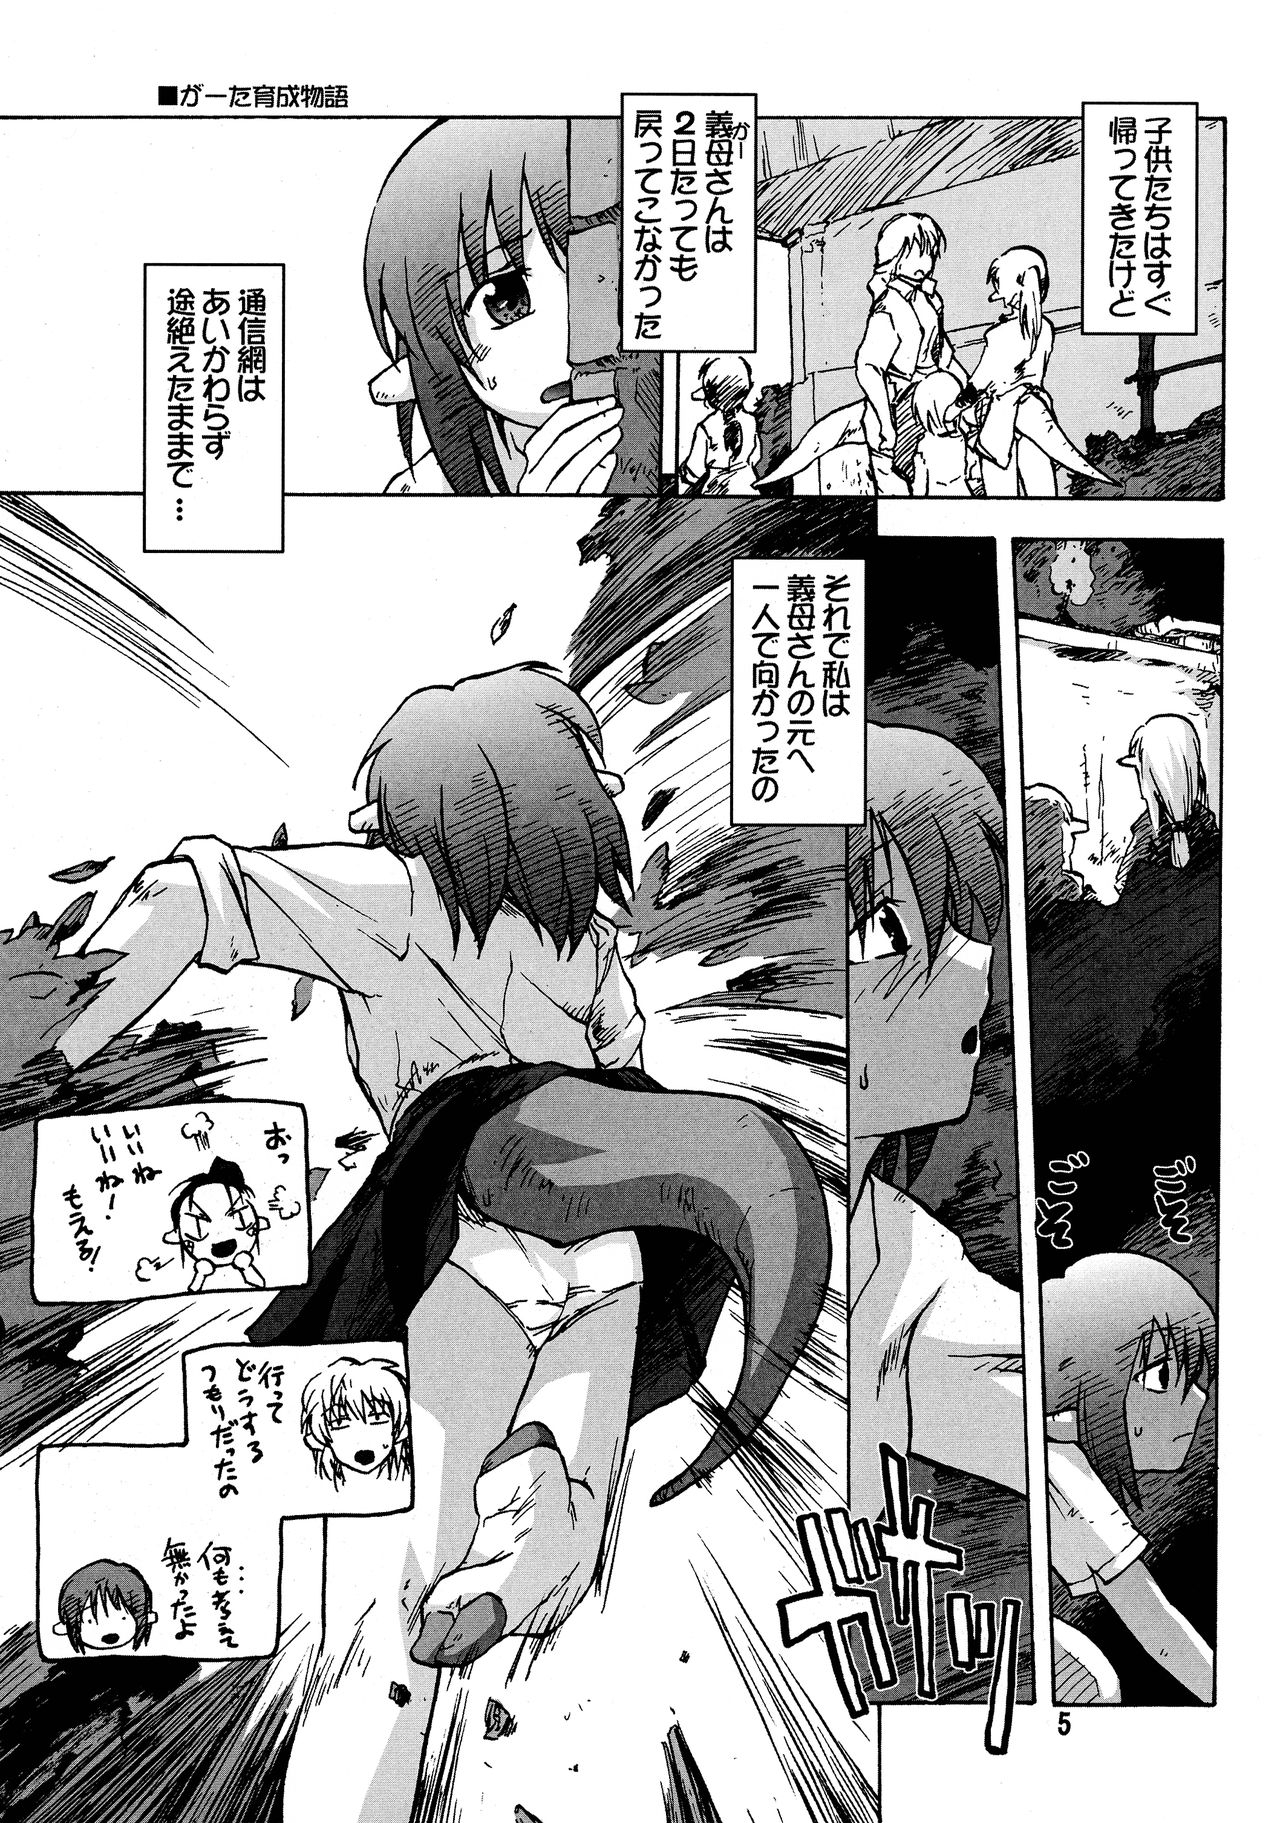 [Kyodai Kidou Yousai Kyoushuu (Kamio 96)] Manga Mintochikuwa vol. 3 4